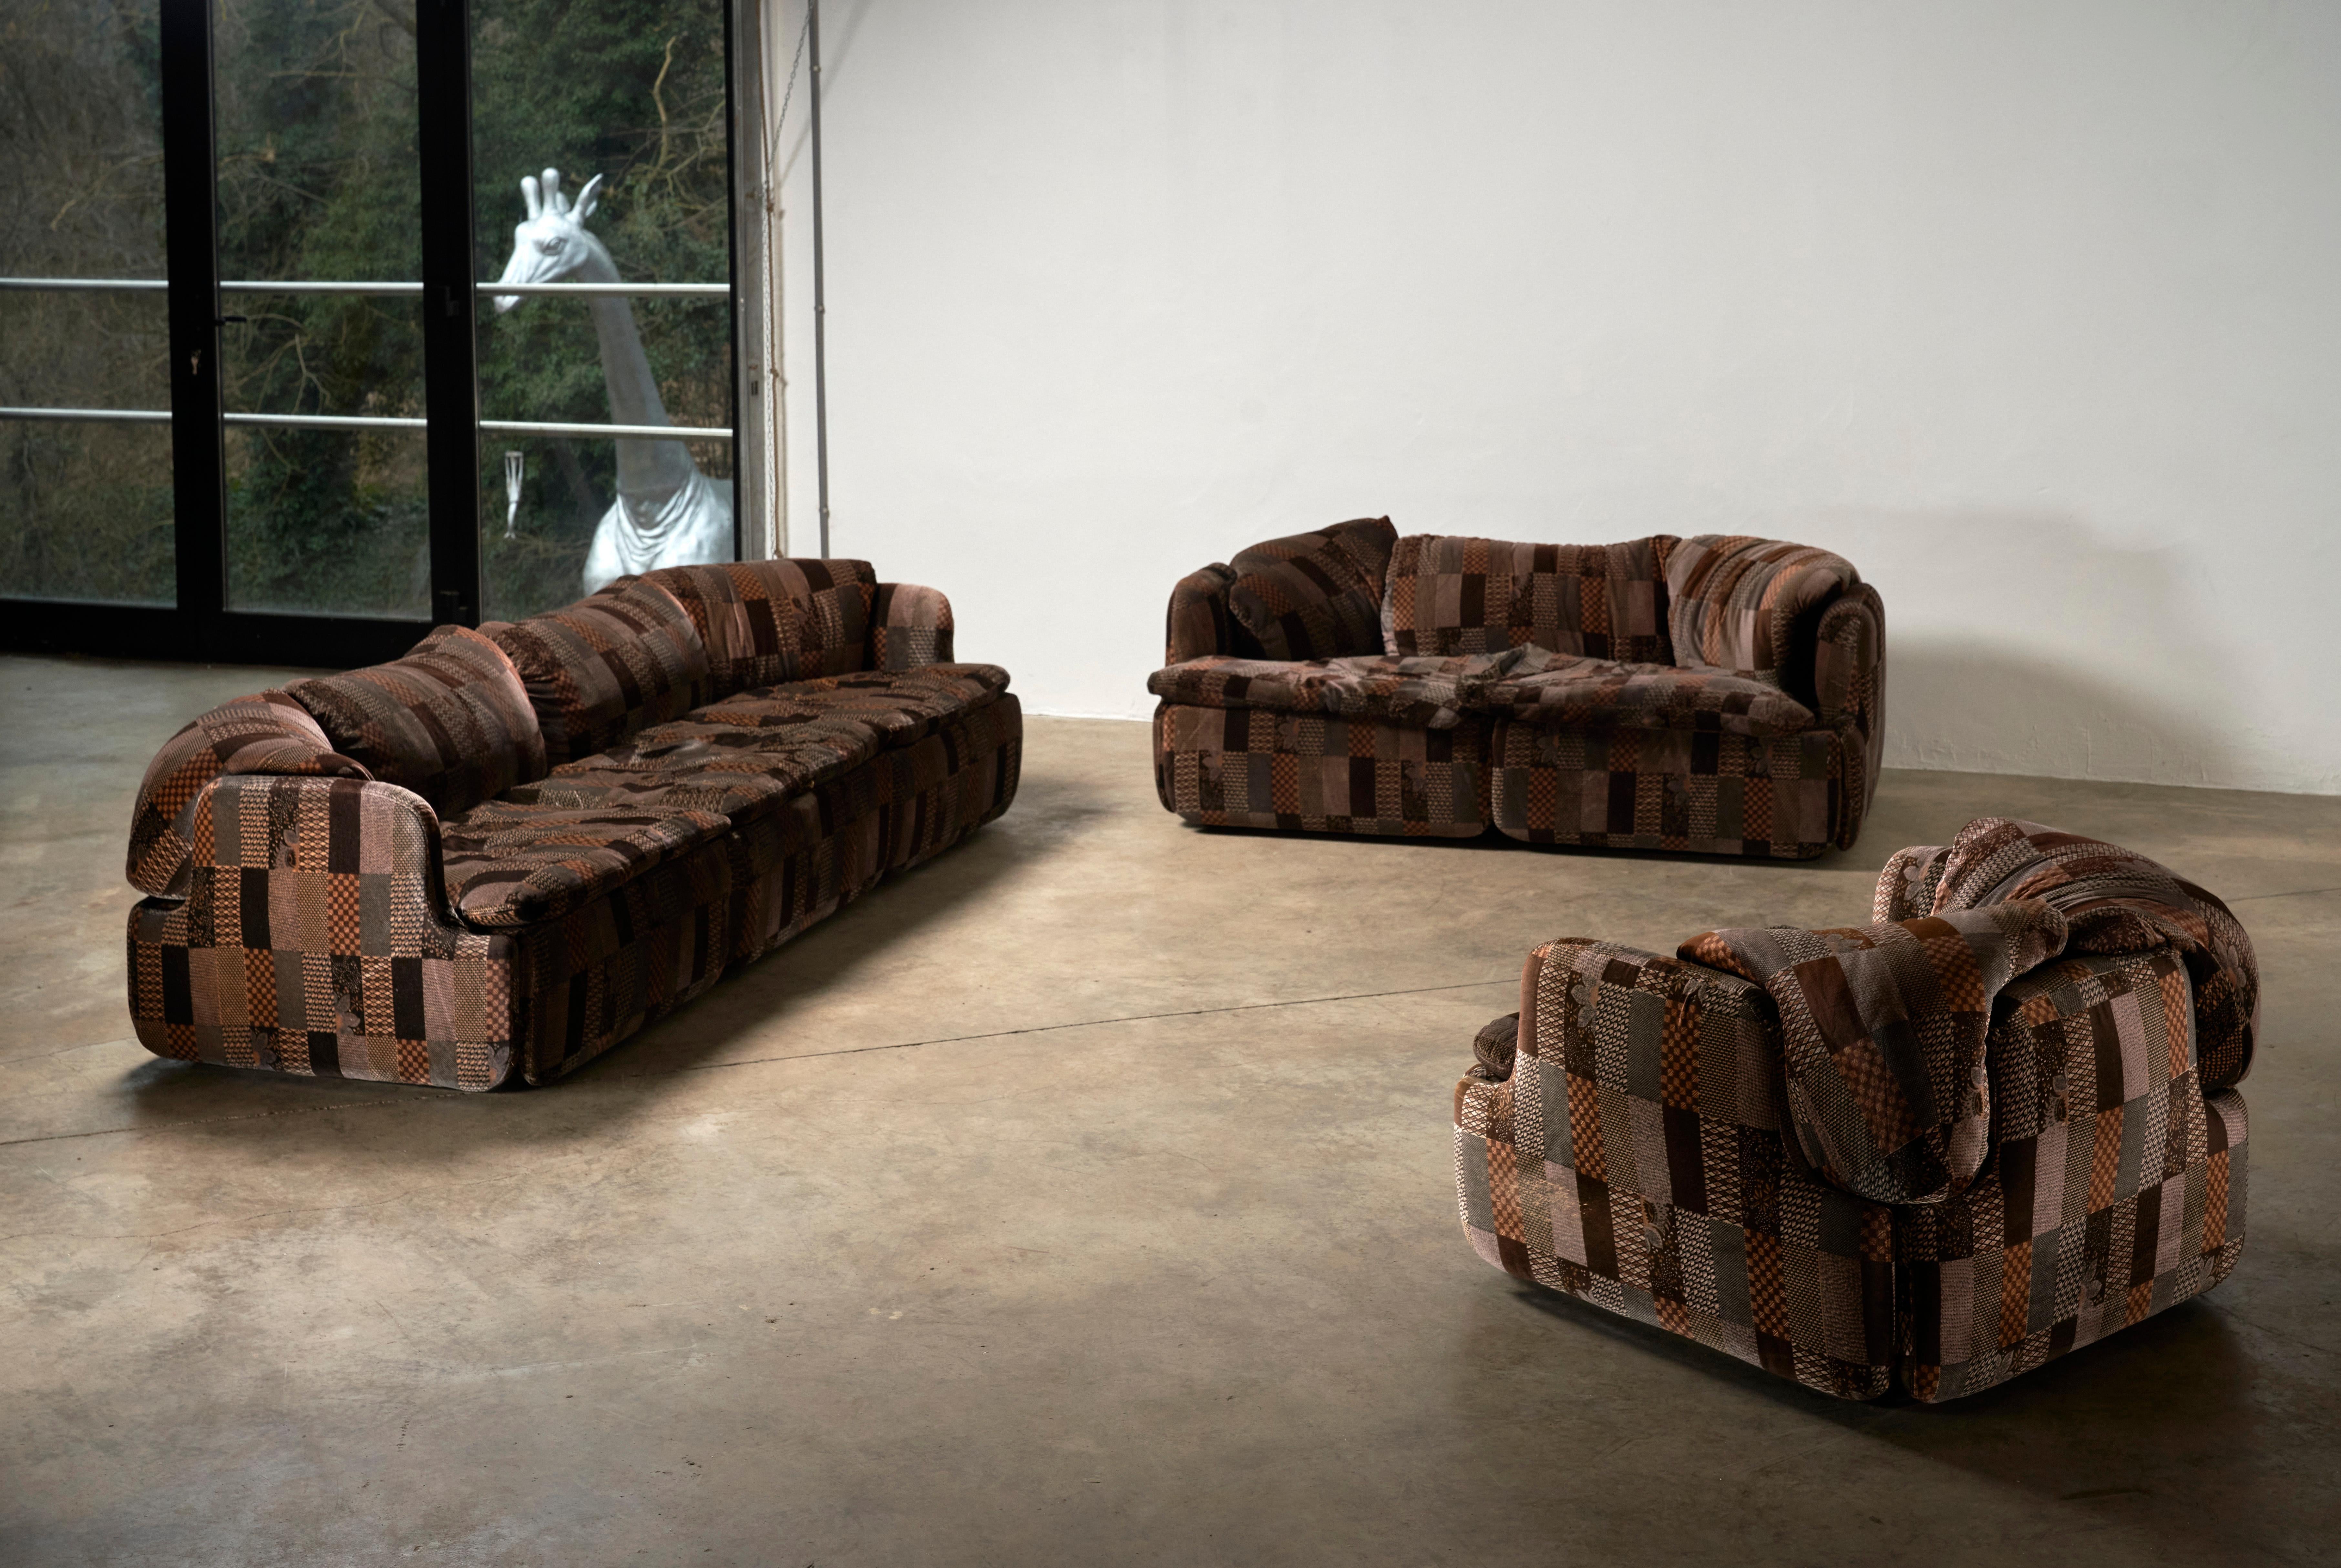 Voici la Collection Saporiti Confidential Sofa d'Alberto Rosselli - une pièce rare qui comprend l'ensemble complet, y compris les canapés à 3 places, à 2 places et à 1 place. Cet ensemble exclusif bénéficie d'un tissu au motif unique et captivant,